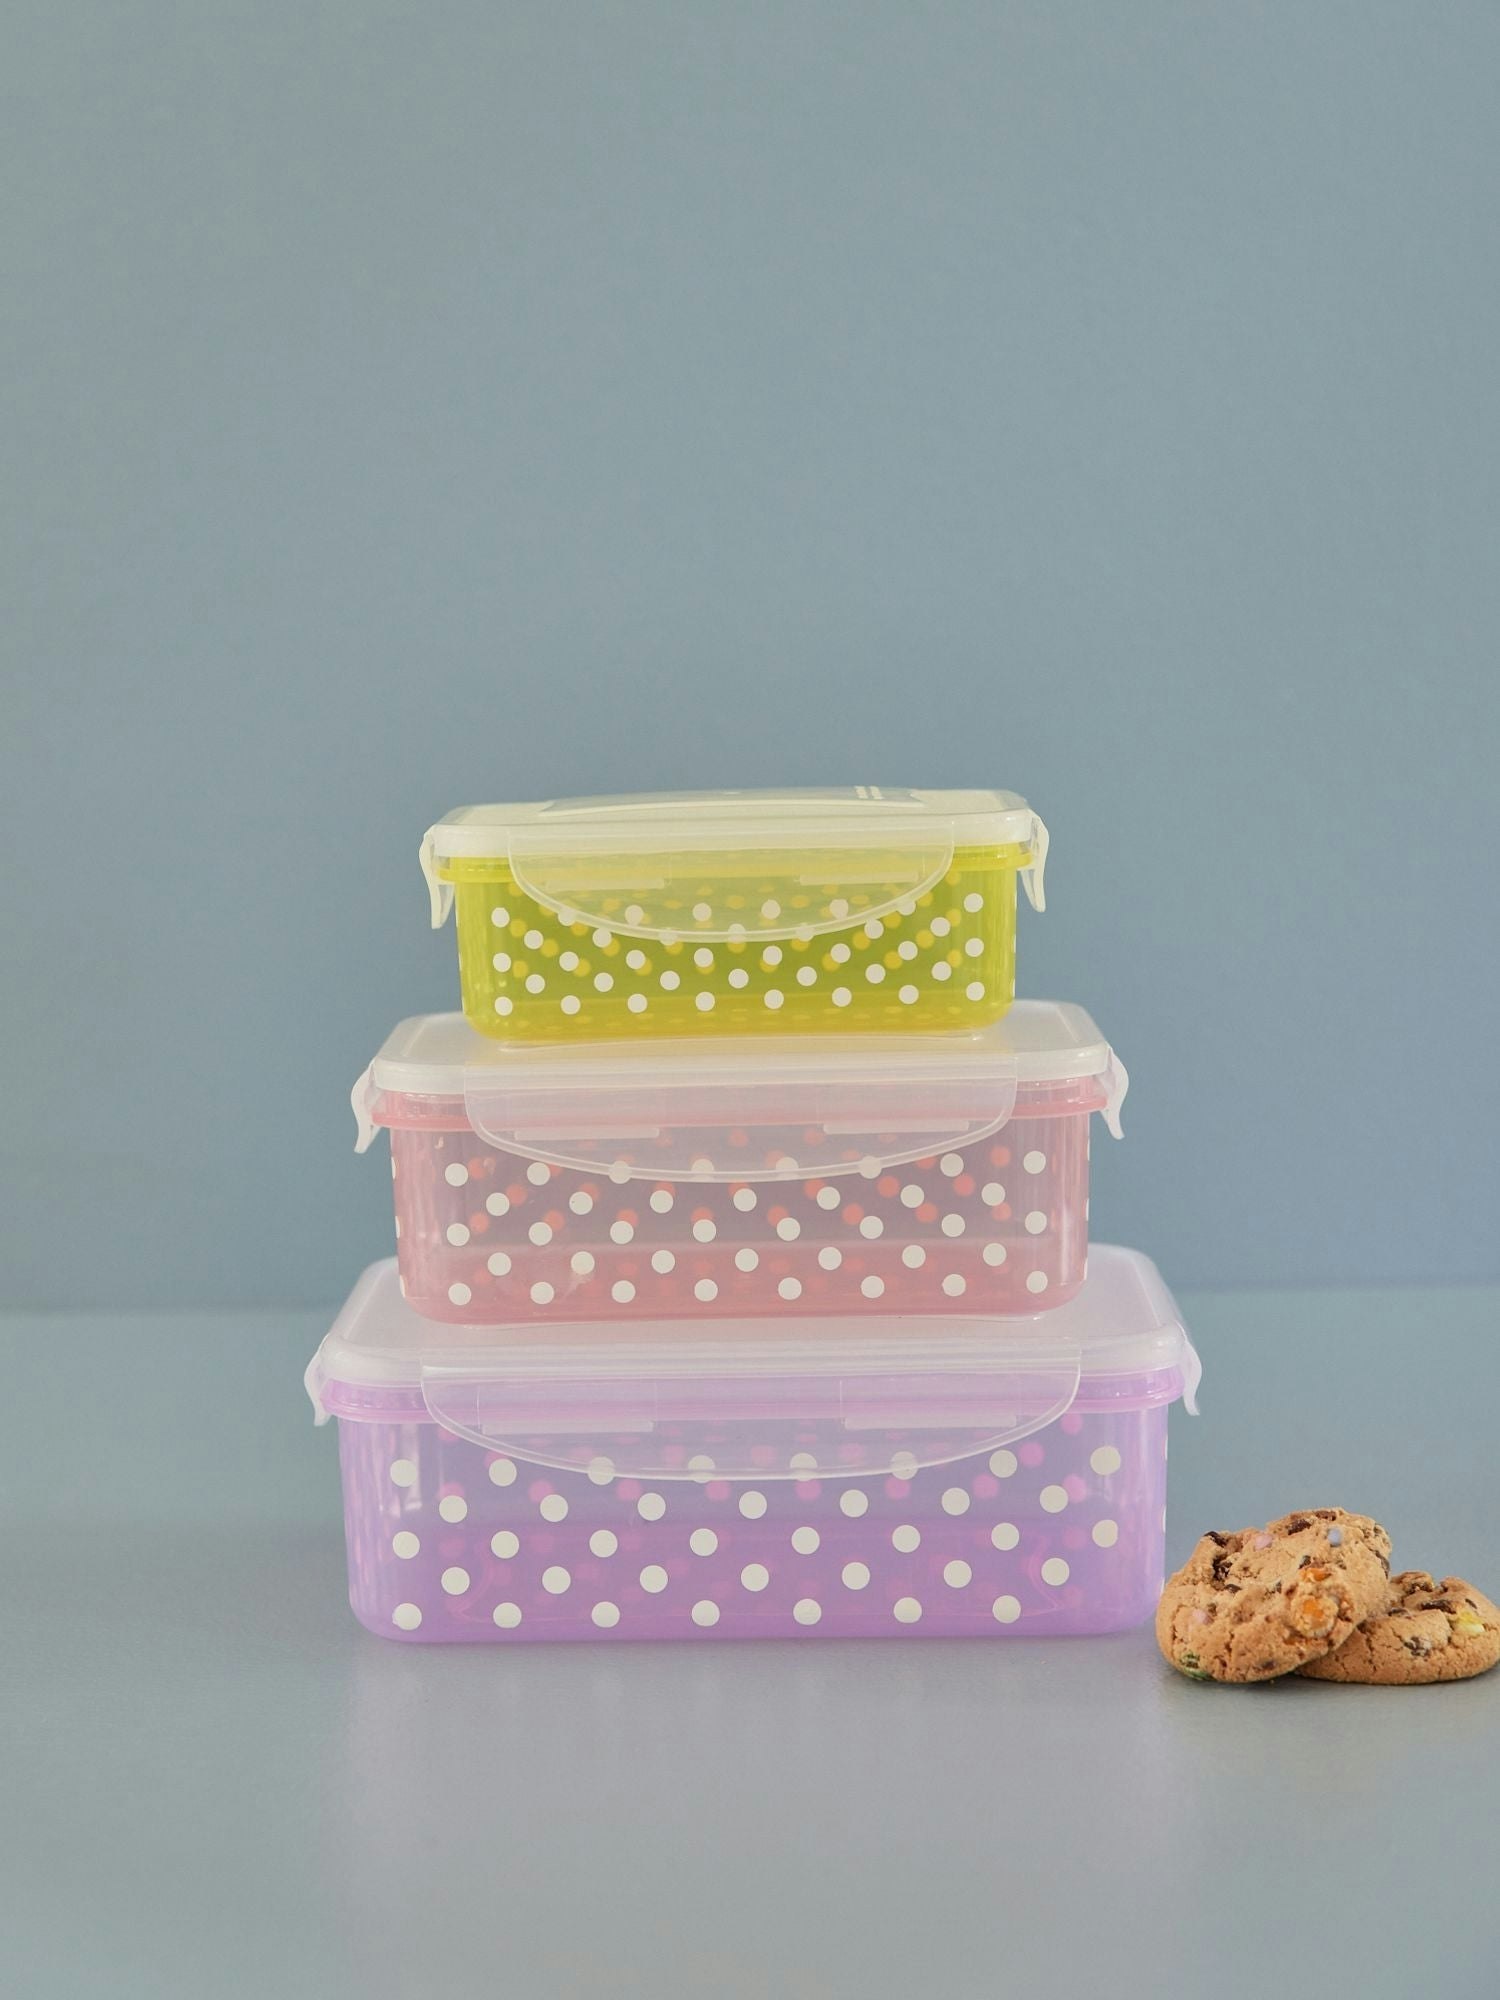 Set med prickiga lådor från Rice. Exempelvis som förvaring av det som ditt barn bakat eller som matlåda, förvaring av frukt eller smörgås  till utflykten. användningsområdena är många.